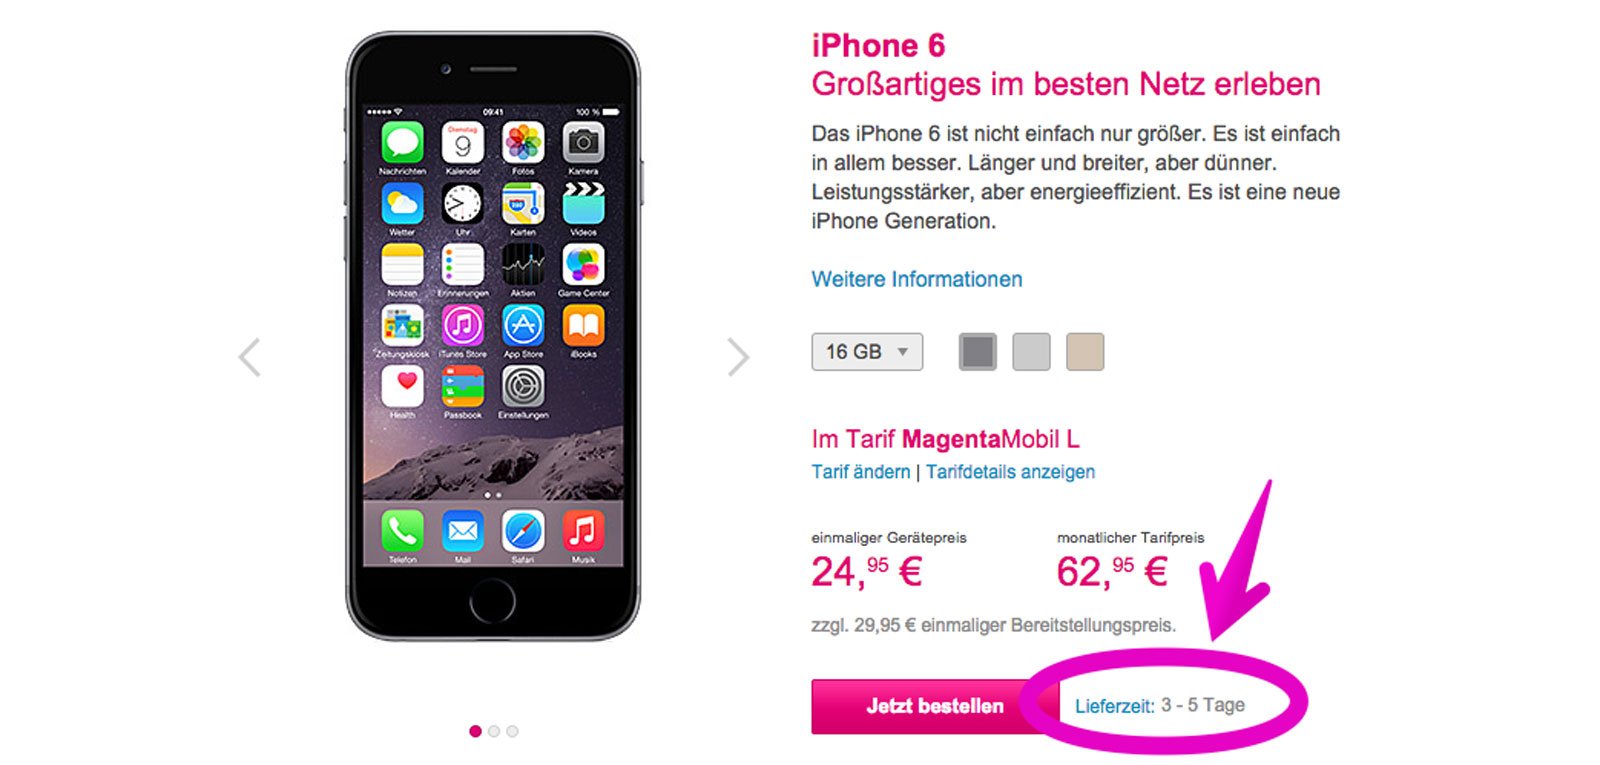 Telekom liefert iPhone 6 schneller! 3